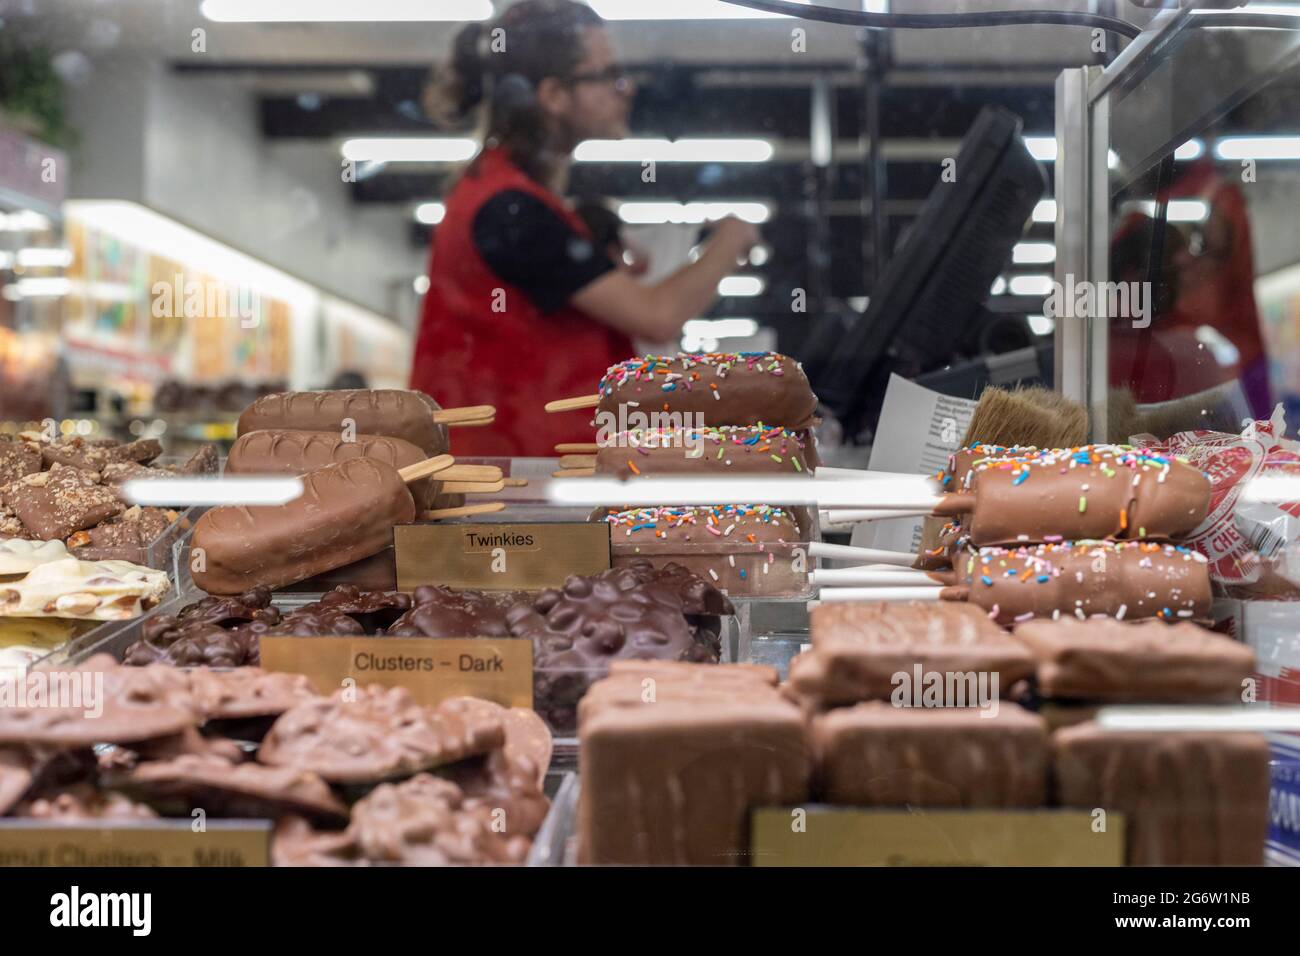 Phillipsburg, Missouri - Redmon's Candy Factory, ein großes Süßwarengeschäft, das für Reisende im Südwesten von Missouri stark beworben wird. Stockfoto